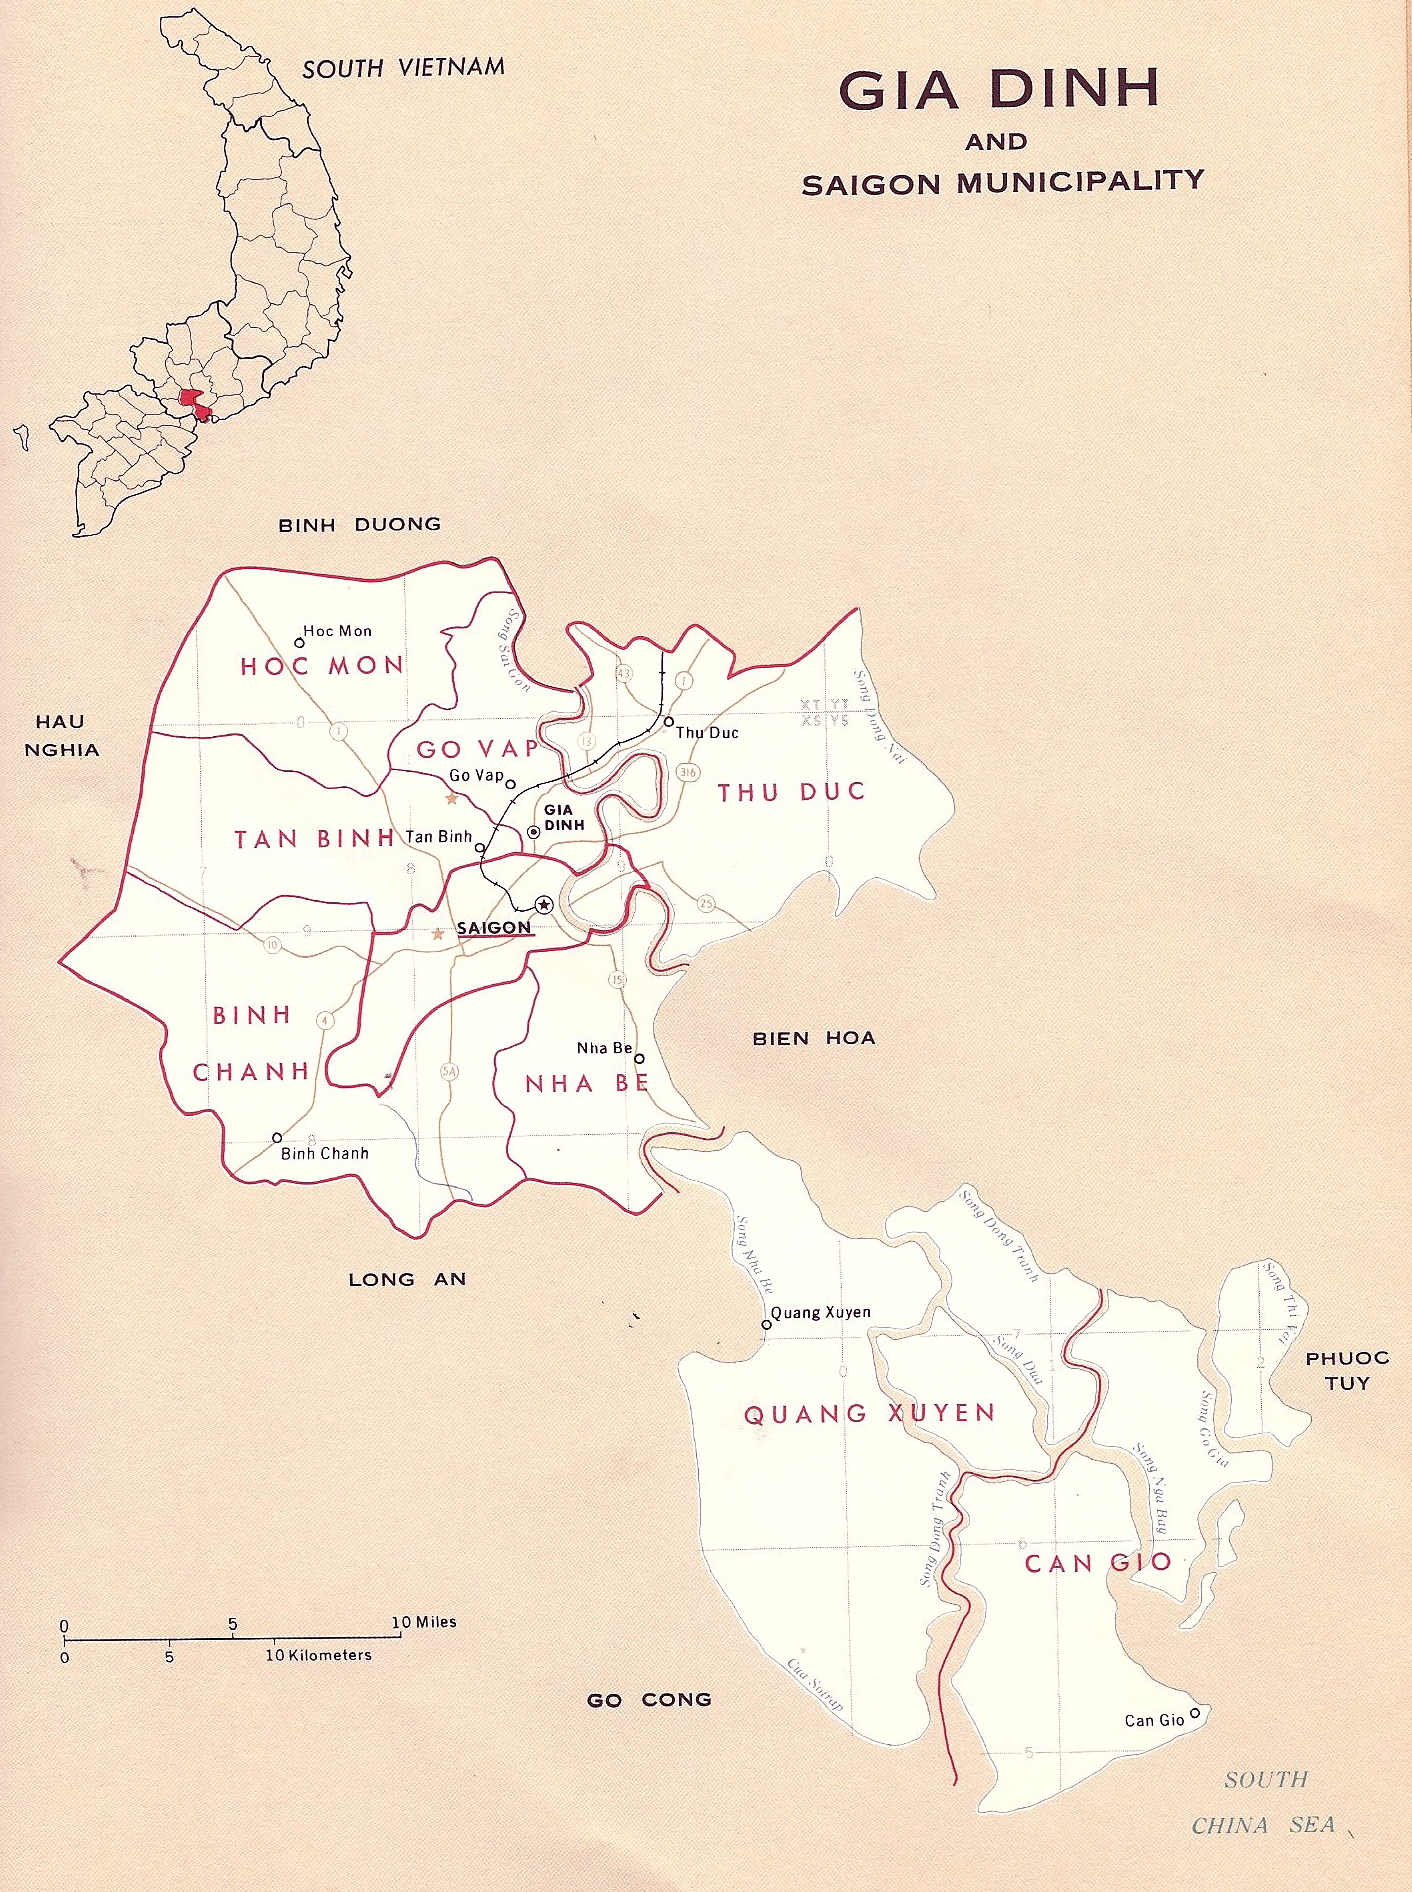 Bản đồ Sài Gòn Gia Định năm 2024 hiển thị rõ ràng về hạ tầng giao thông và khu đô thị phát triển, mở ra một cách nhìn mới và khám phá những nét đẹp của thành phố xưa.